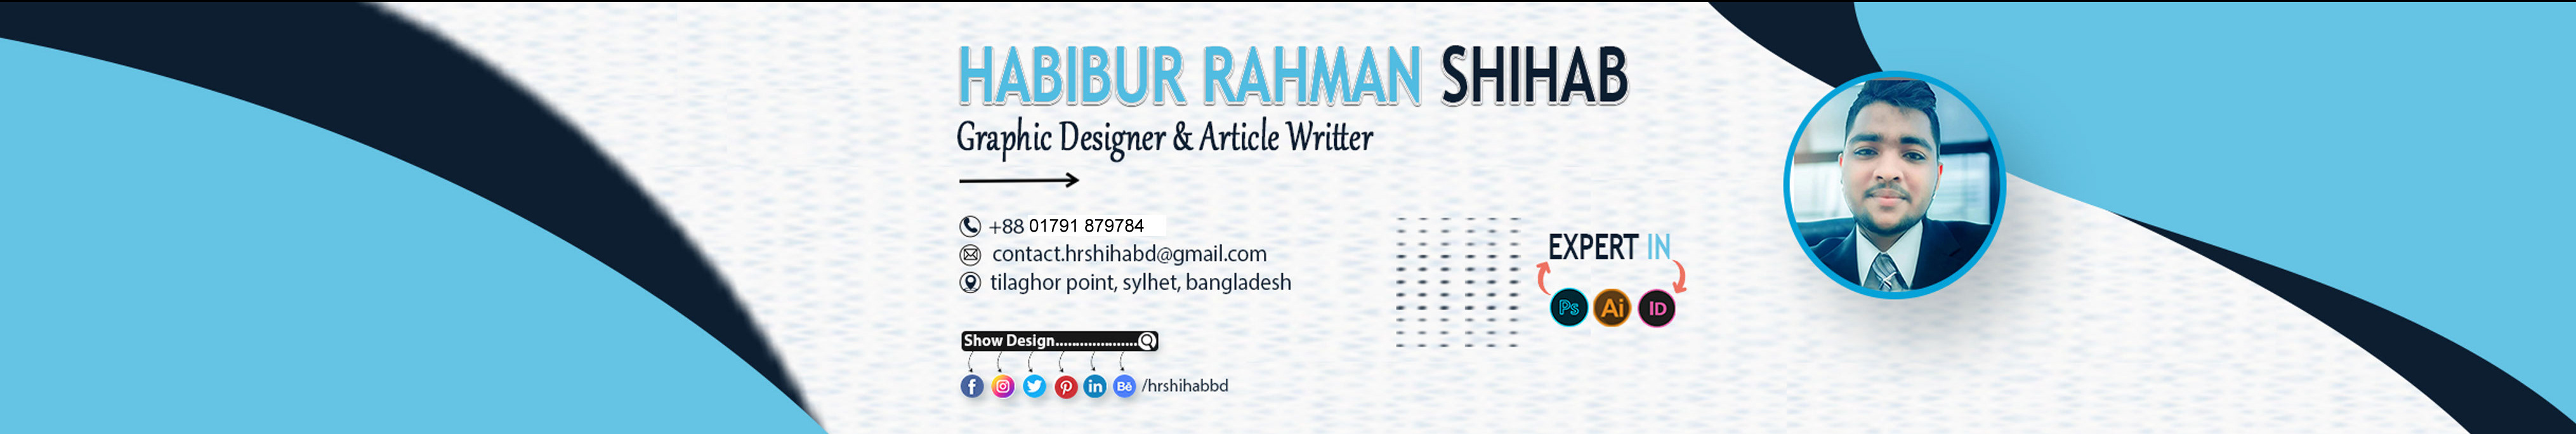 Habibur Rahman Shihab's profile banner